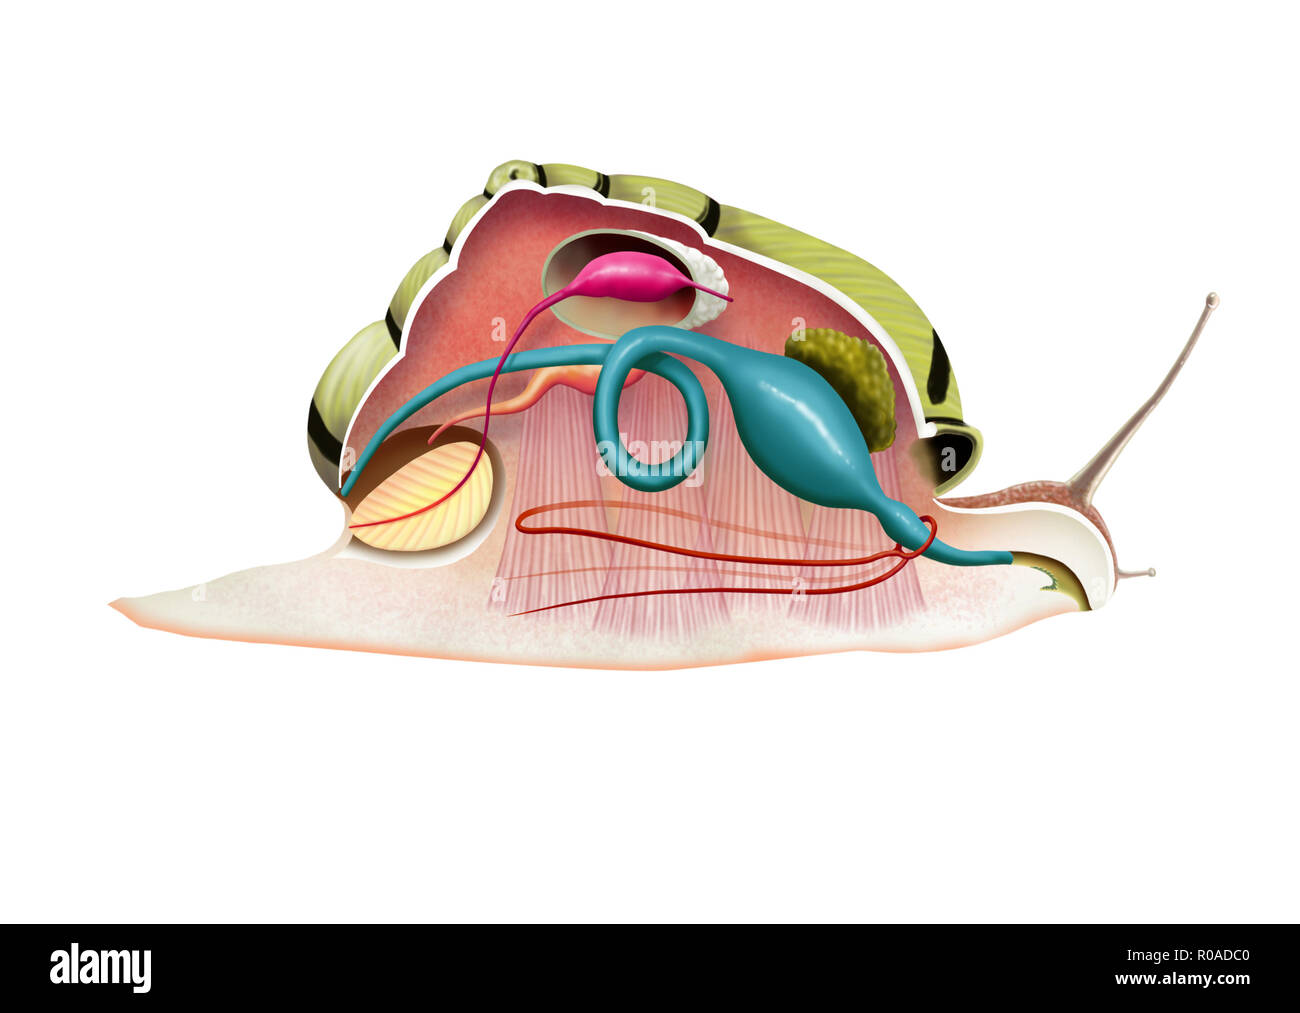 Illustrazione Digitale di una lumaca anatomia Foto Stock